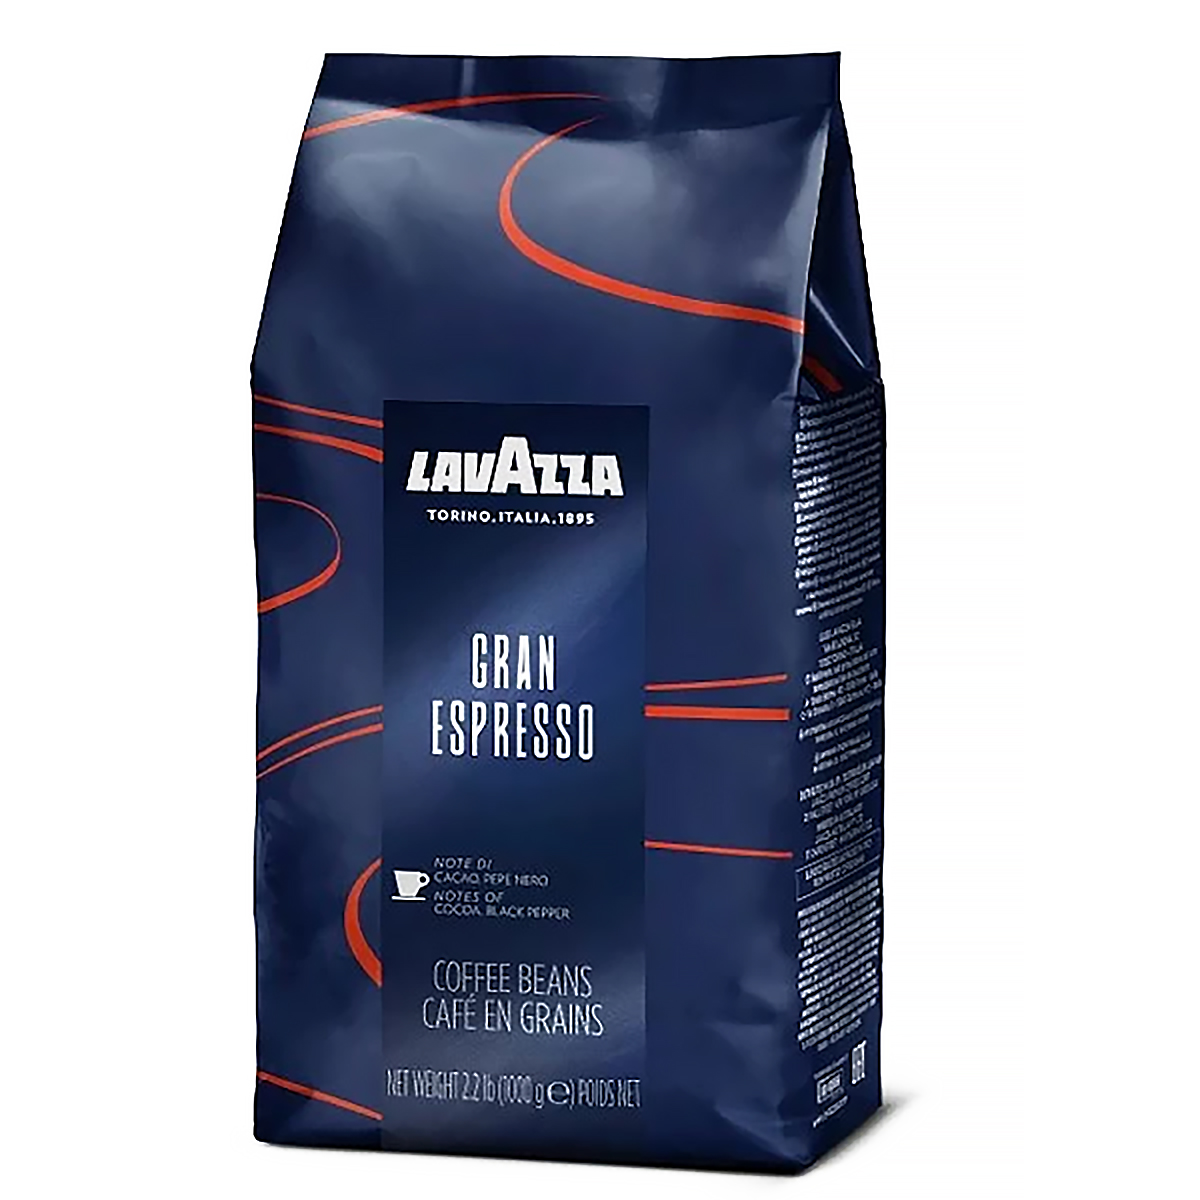 Купить зерновой кофе для кофемашины недорого. Lavazza кофе зерновой super crema. Lavazza Grand Espresso (1 кг). Lavazza super crema кофе в зернах 1 кг. Лавацца эспрессо в зернах 1 кг.